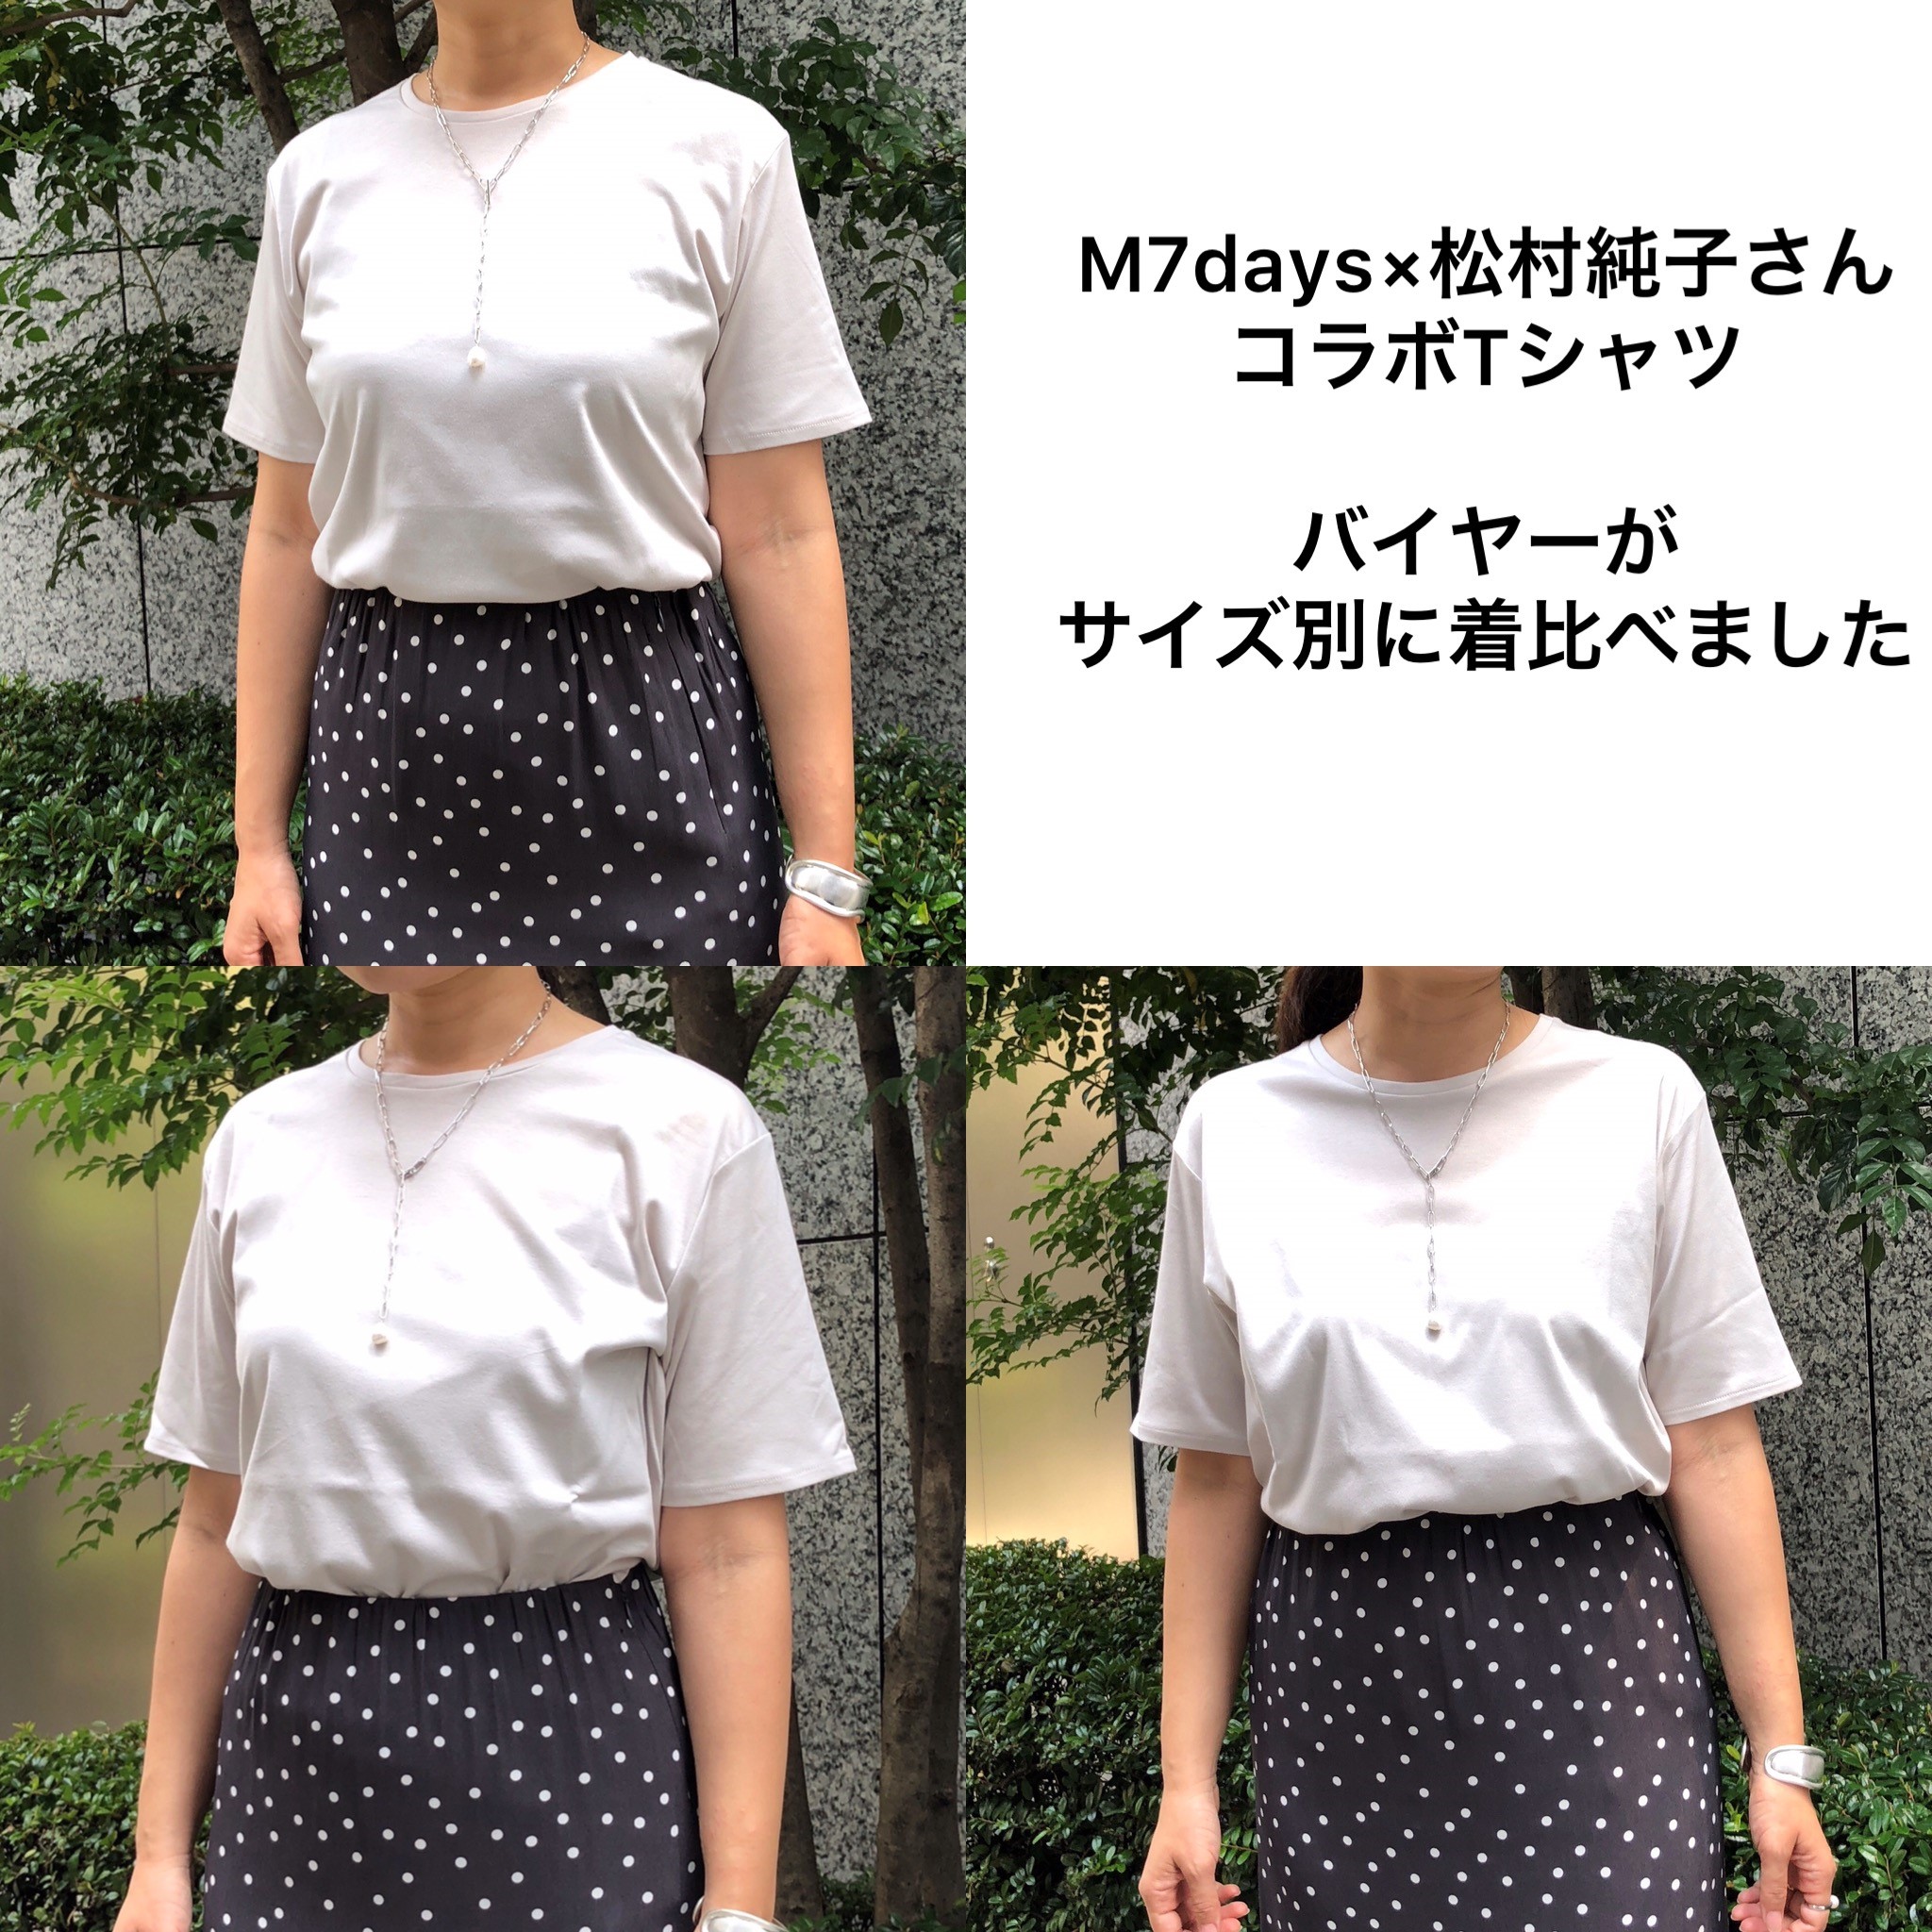 M7days 【松村純子さんコラボ】Tシャツ バイヤーがサイズ別に着比べて ...